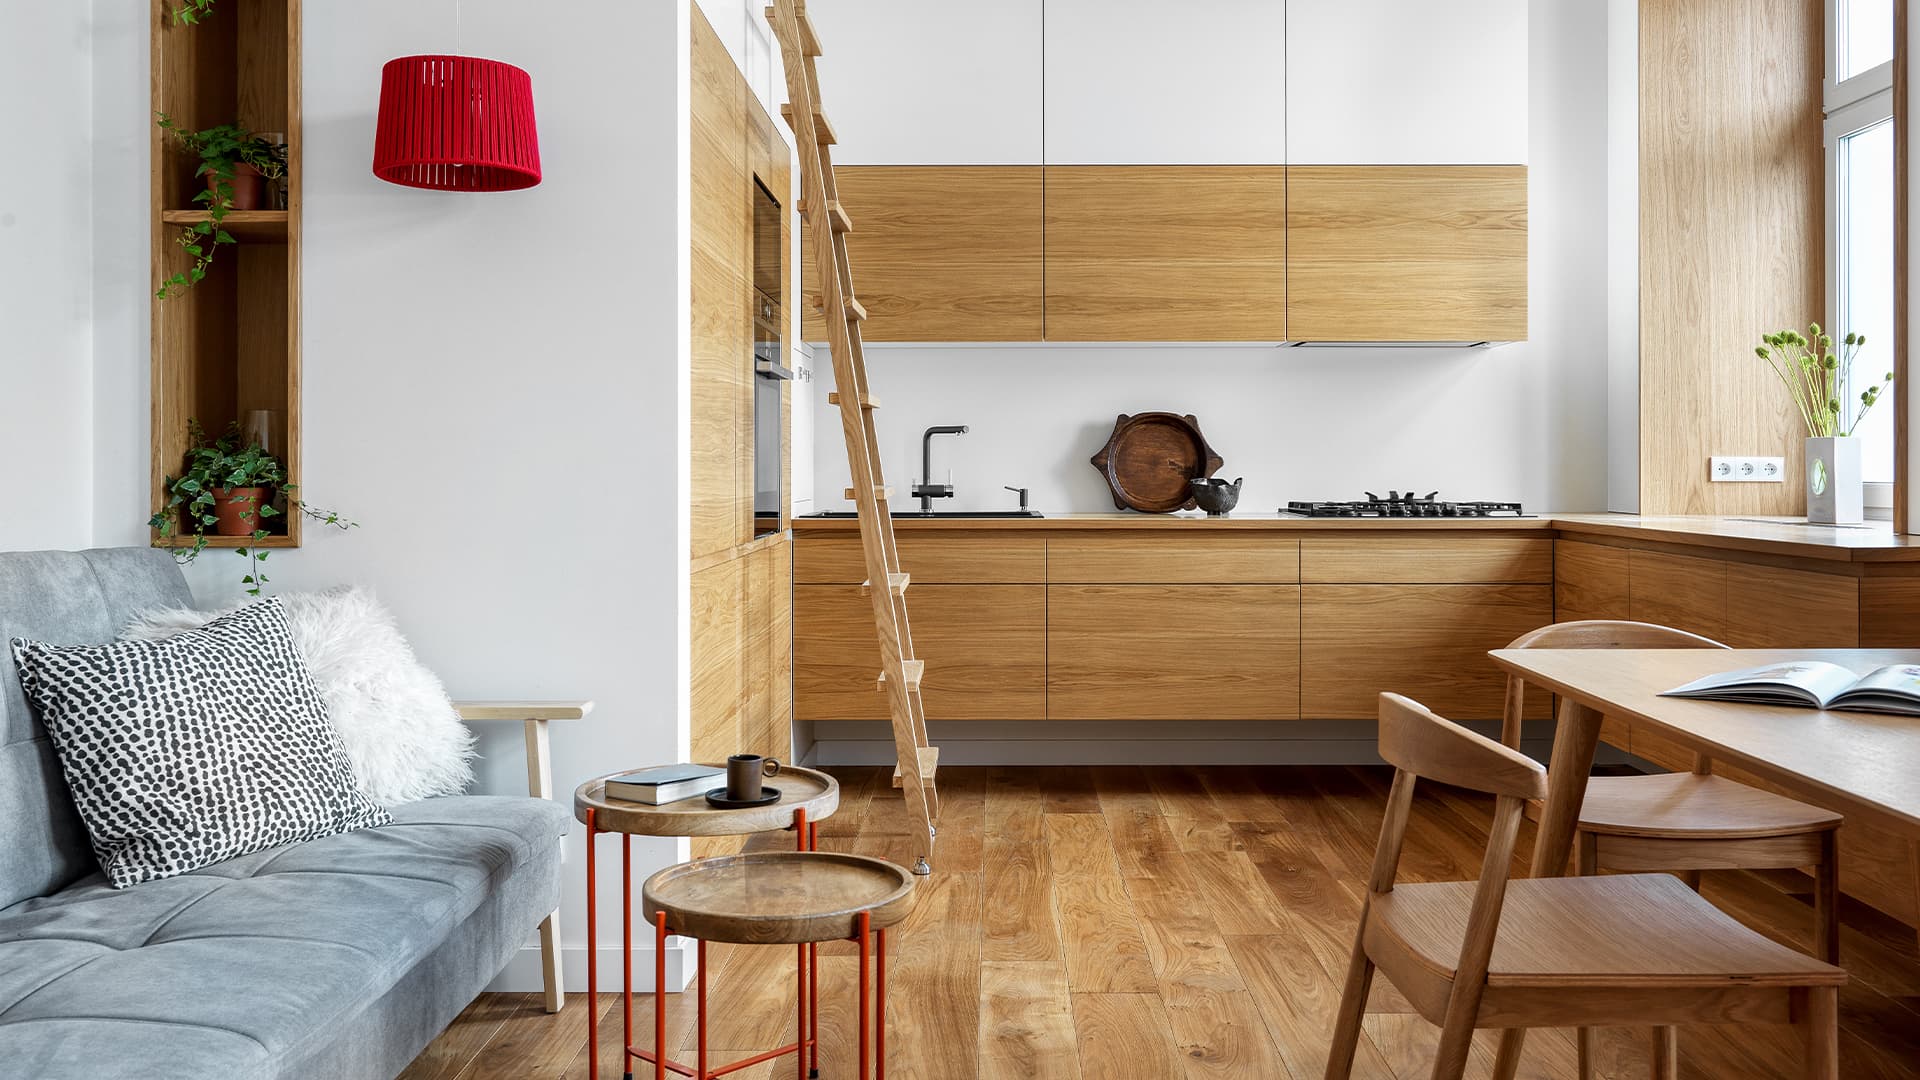 Акцентная мебель из дерева в интерьере квартиры с высокими потолками — проект Максима Сивухи и Натальи Желтоуховой 